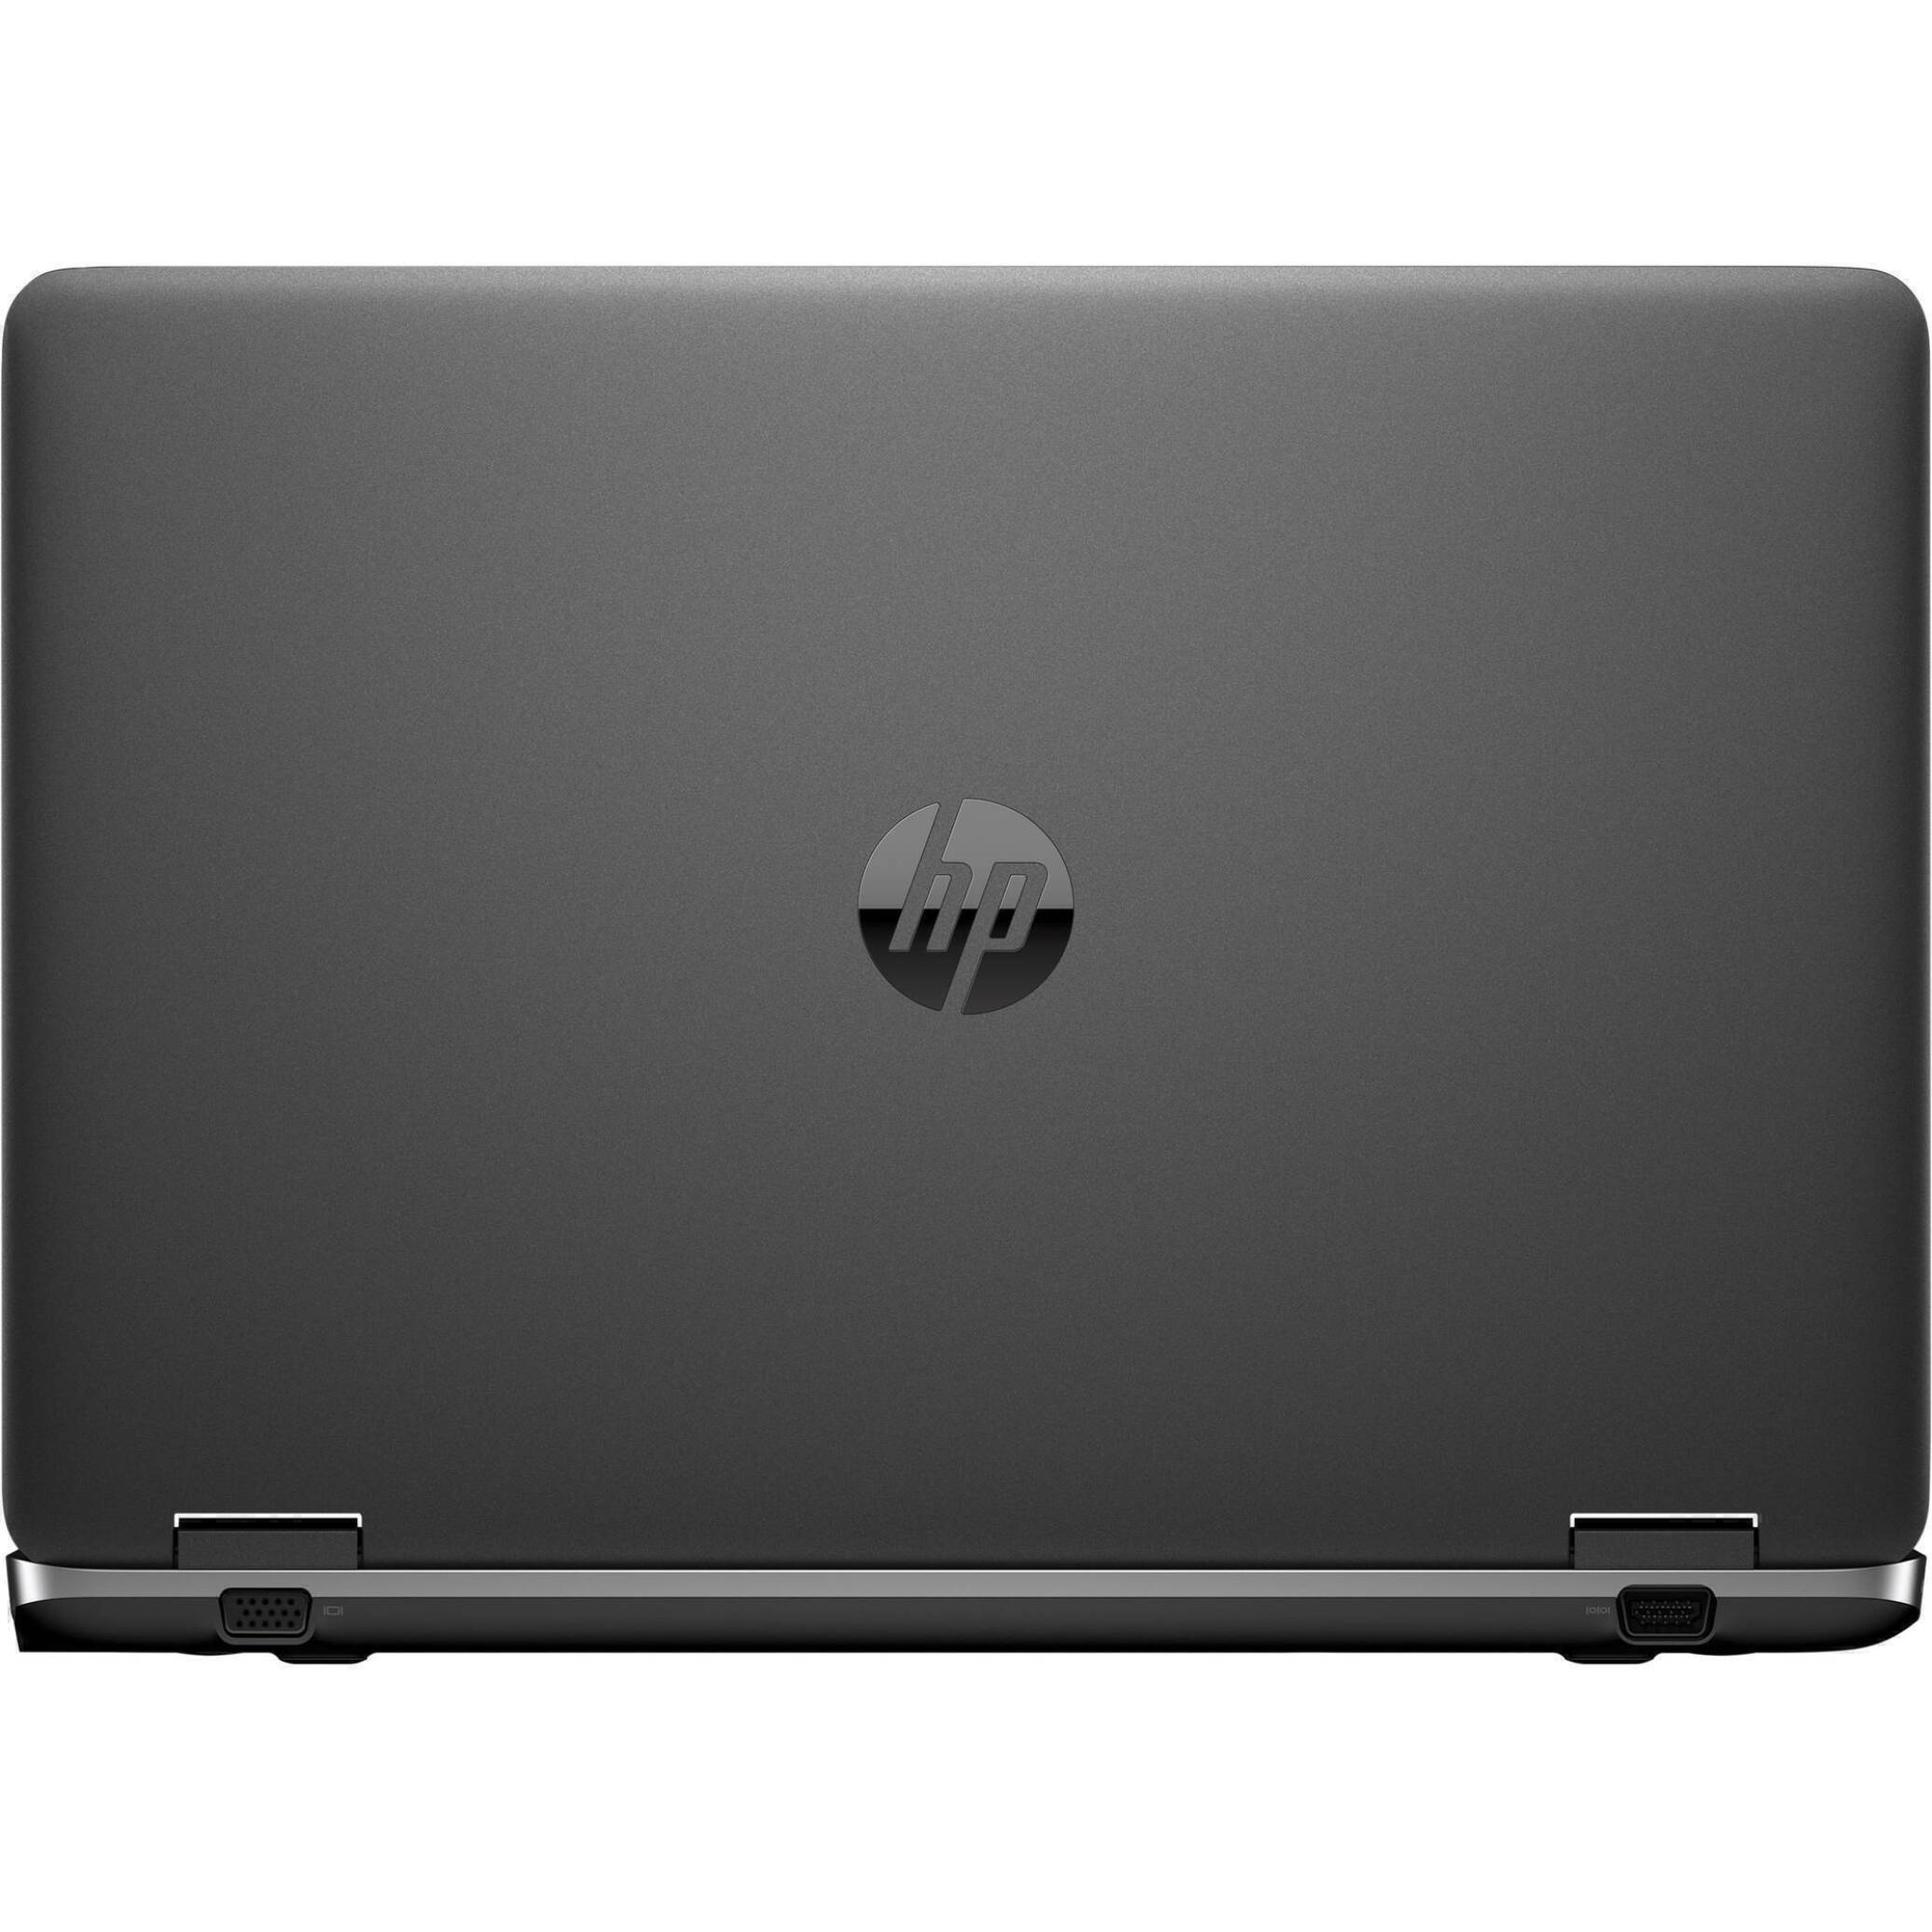  لپ تاپ استوک HP ProBook 650 G1|خرید لپ تاپ استوک اروپایی HP ProBook 650 G1 بدون گرفیک intel HD پردازنده نسل چهارم با هار 